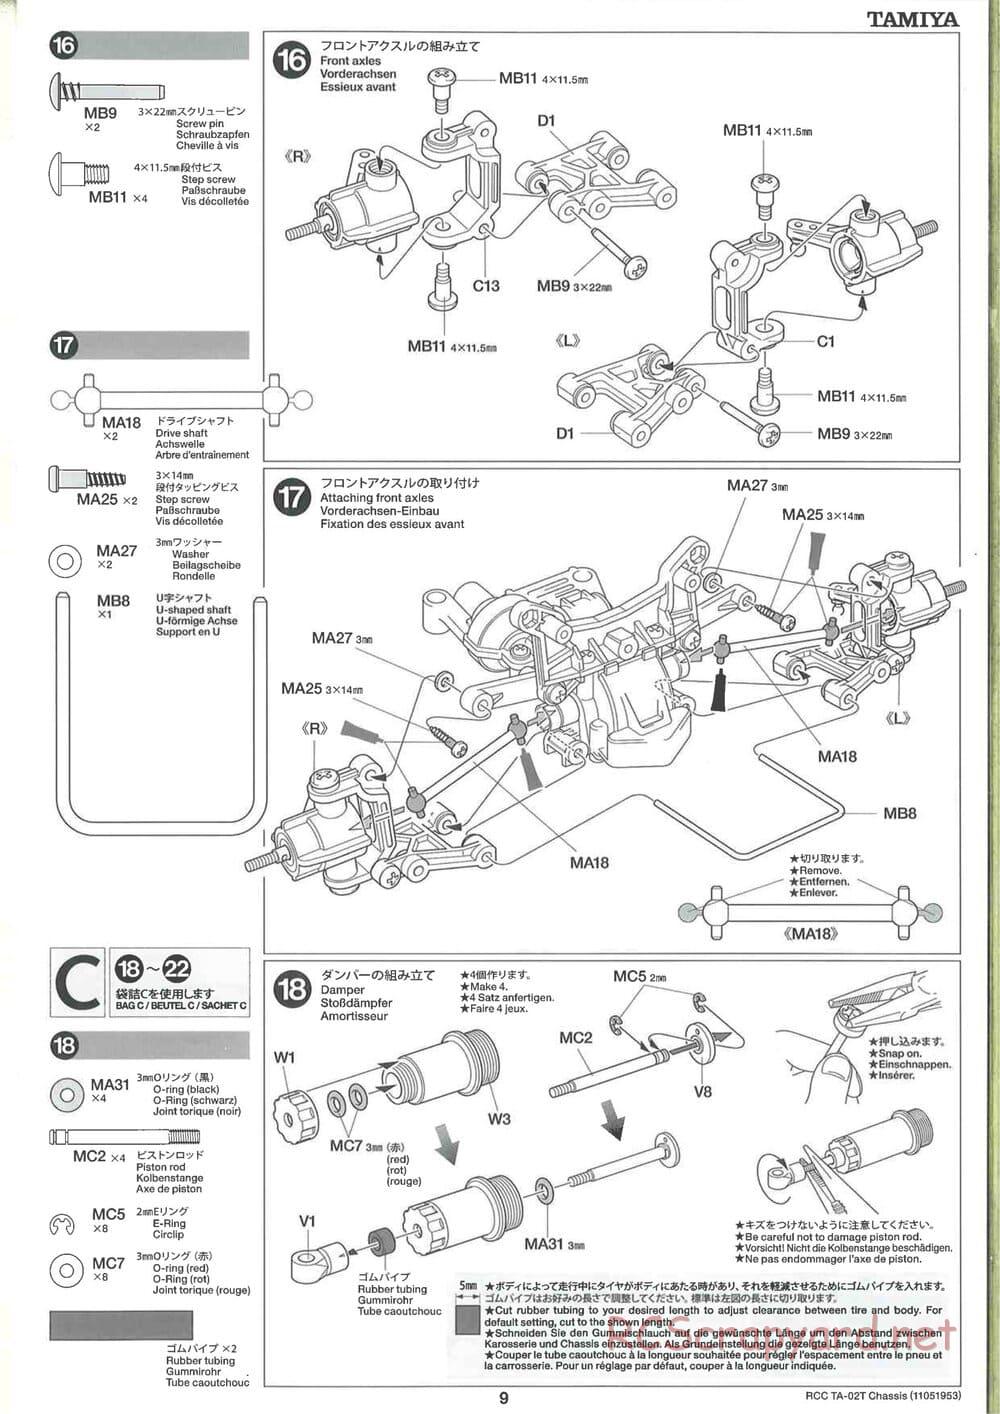 Tamiya - TA-02T Chassis - Manual - Page 9